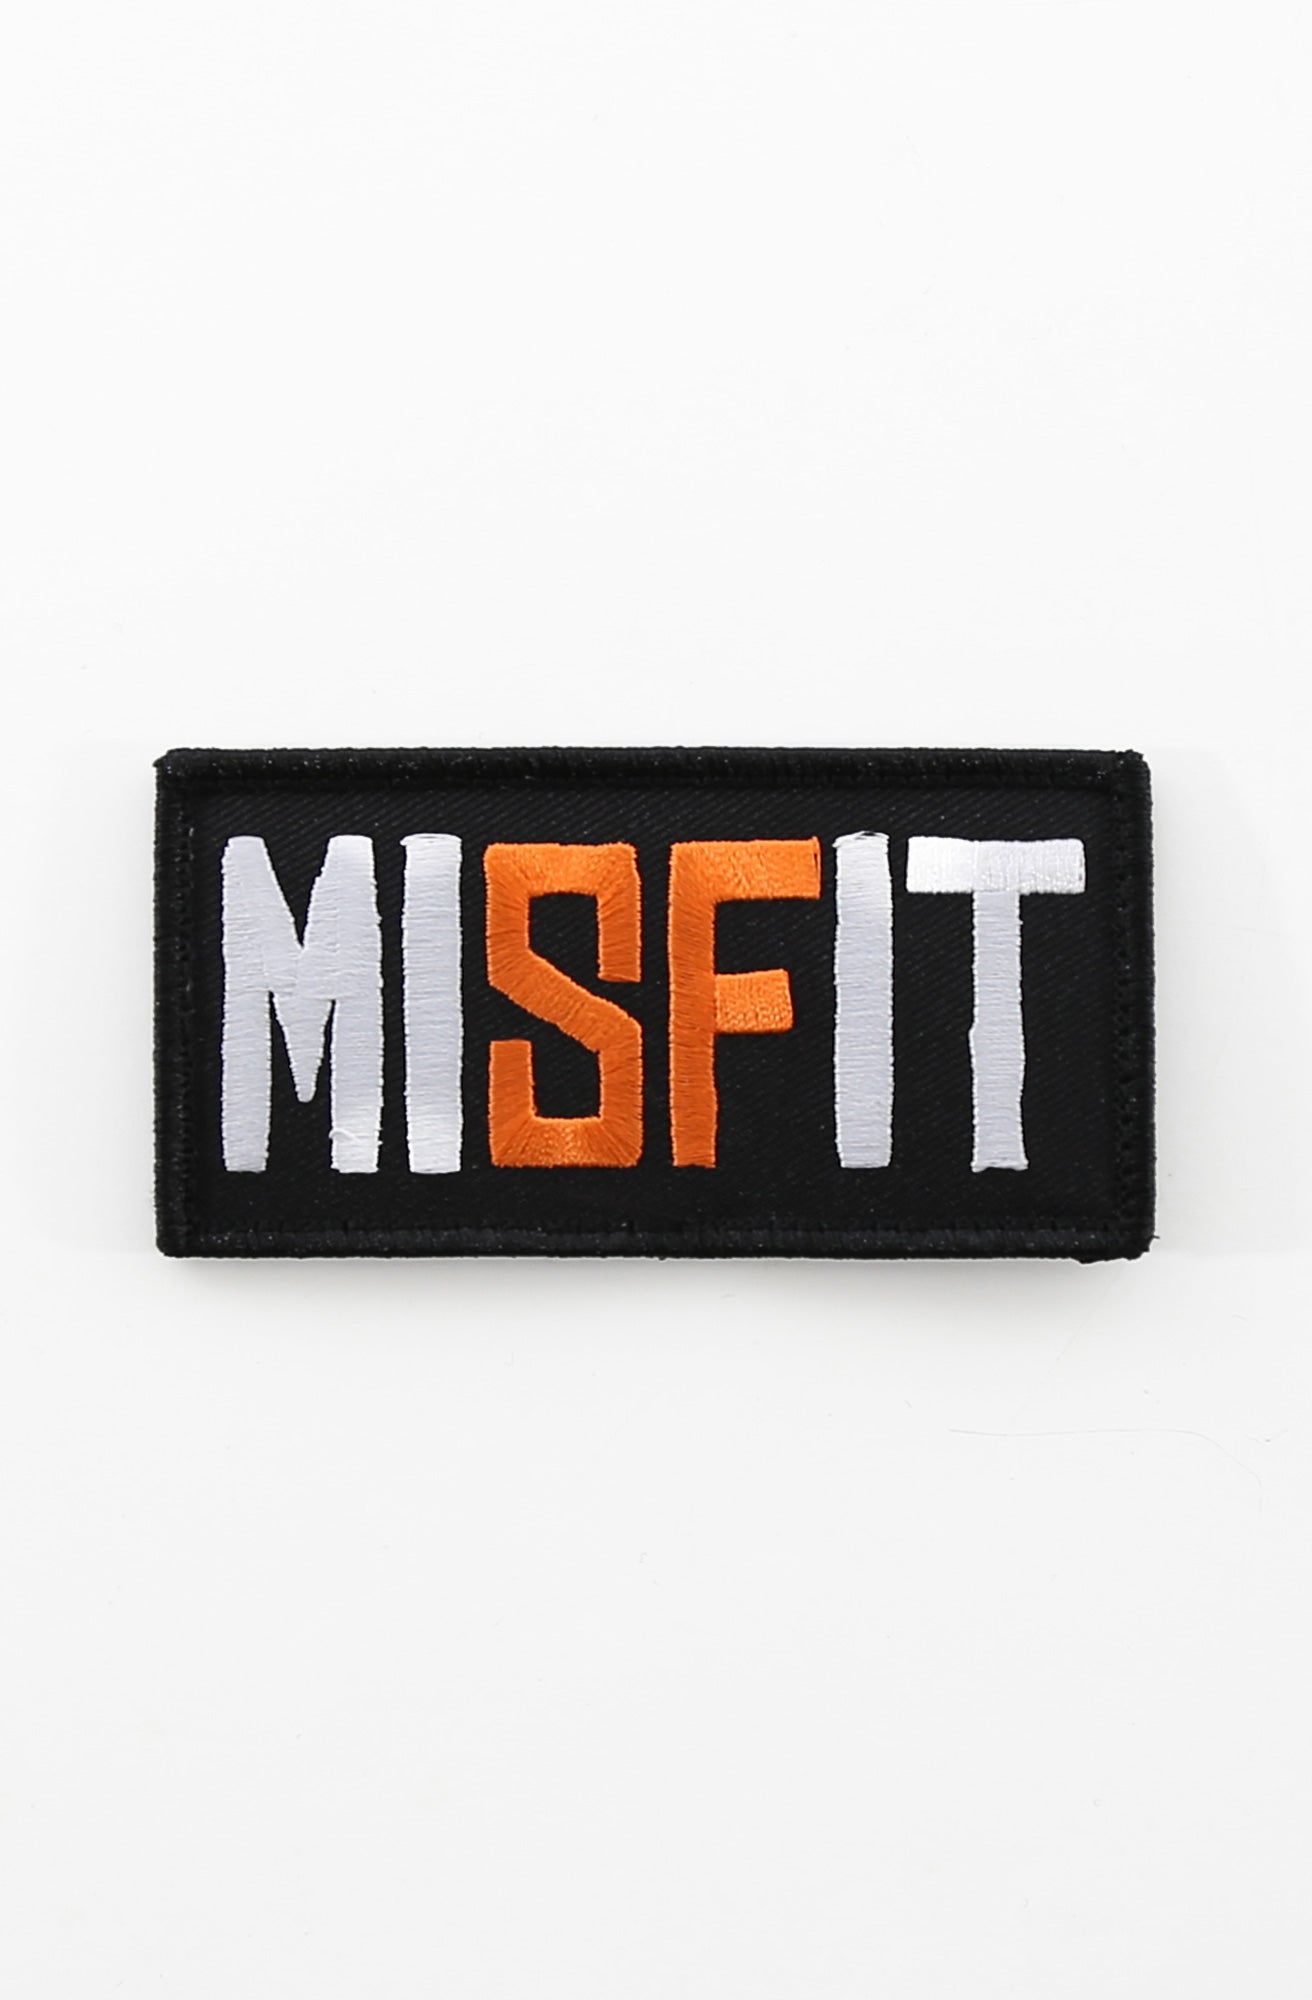 Misfit (Velcro Patch 2" x 4")